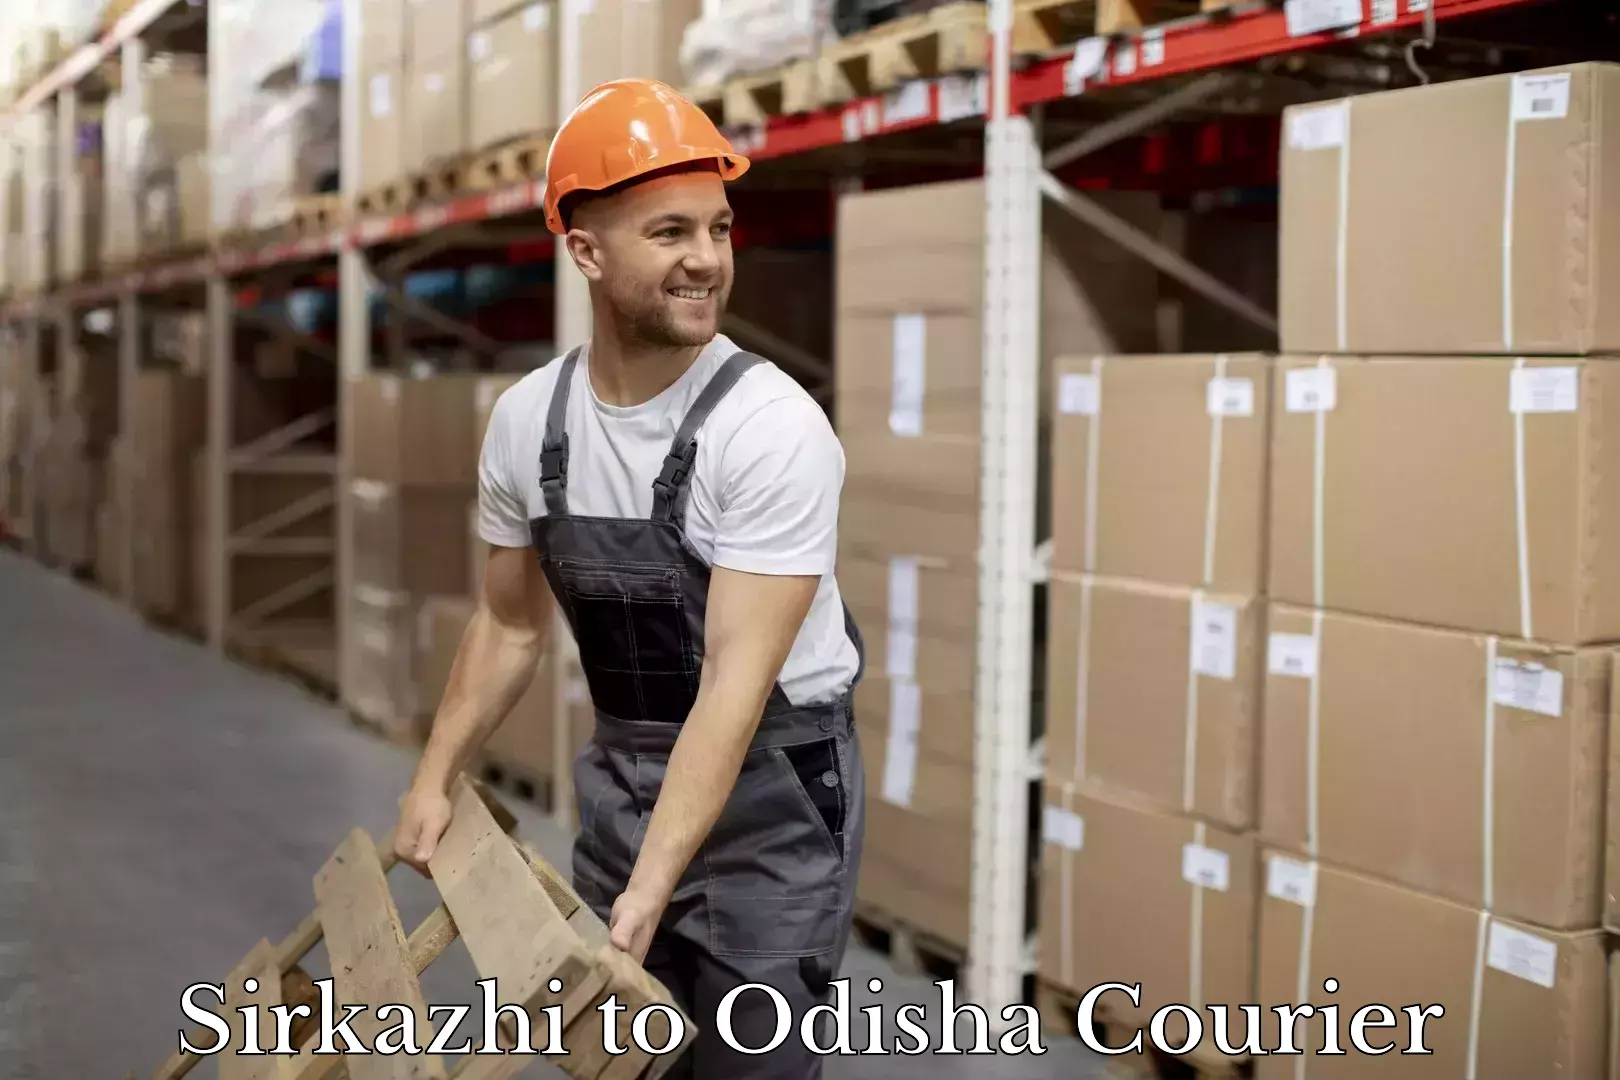 Courier service partnerships Sirkazhi to Odisha